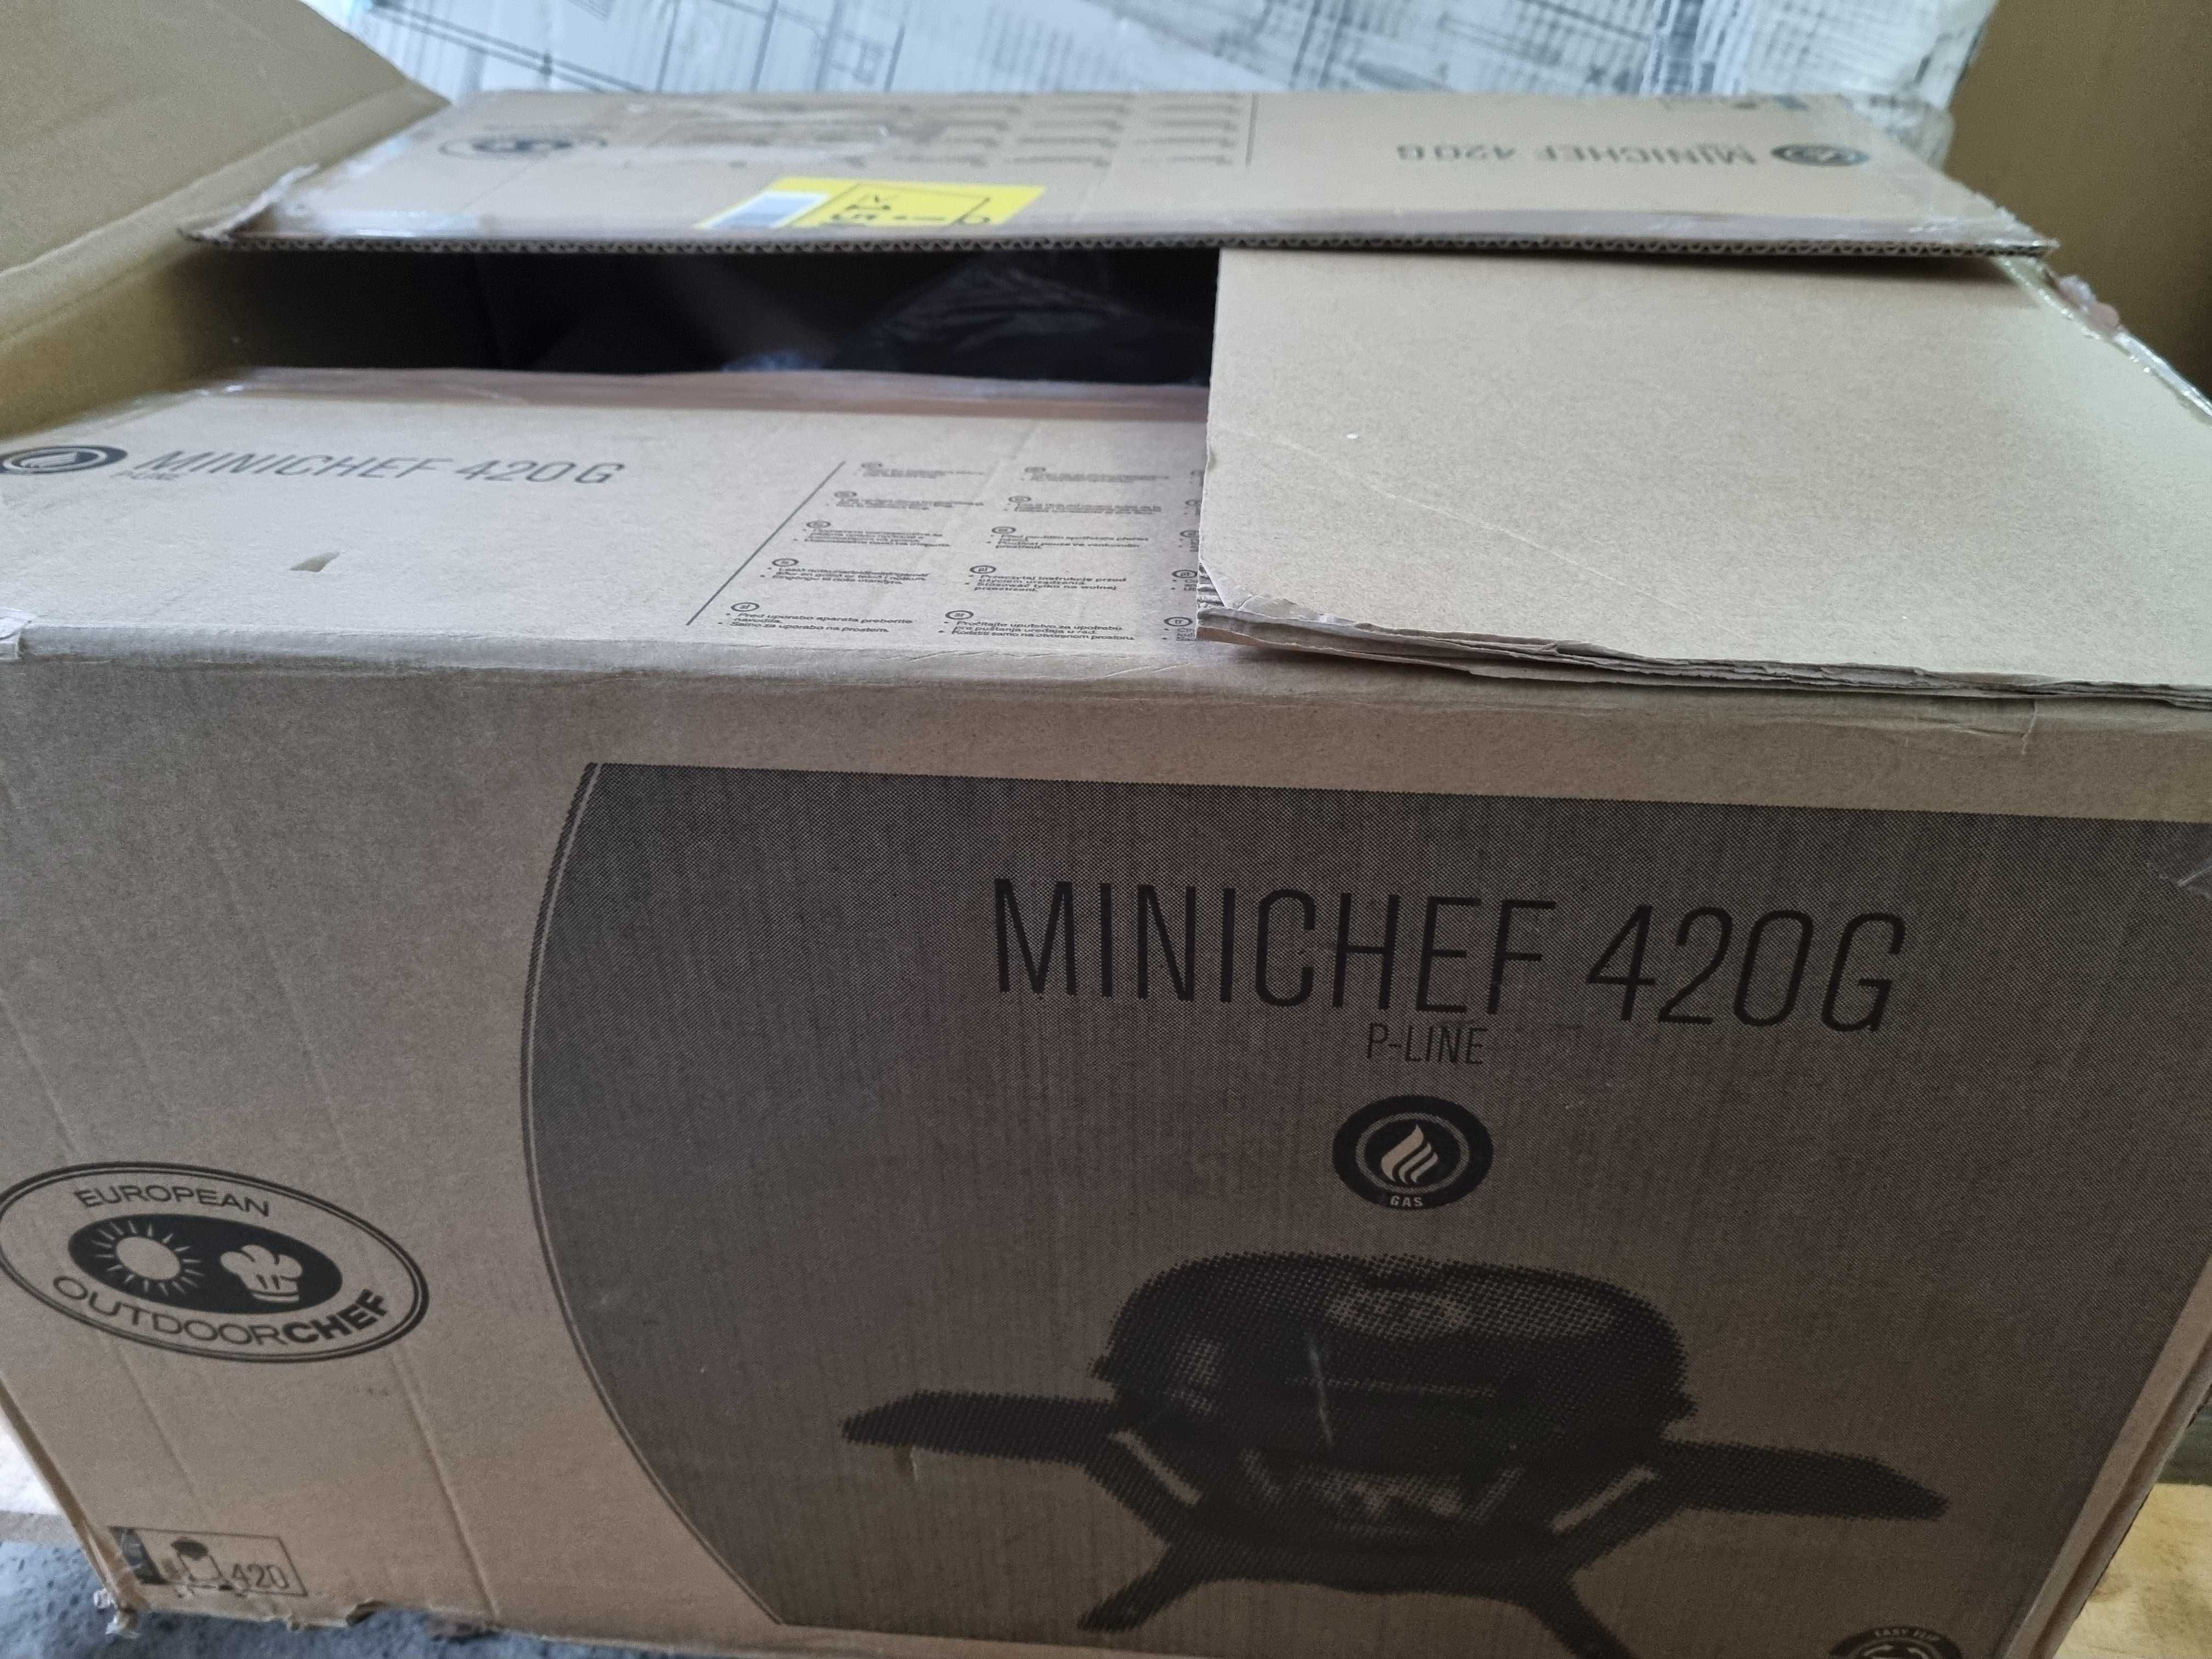 Grill gazowy Minichef 420G P-line